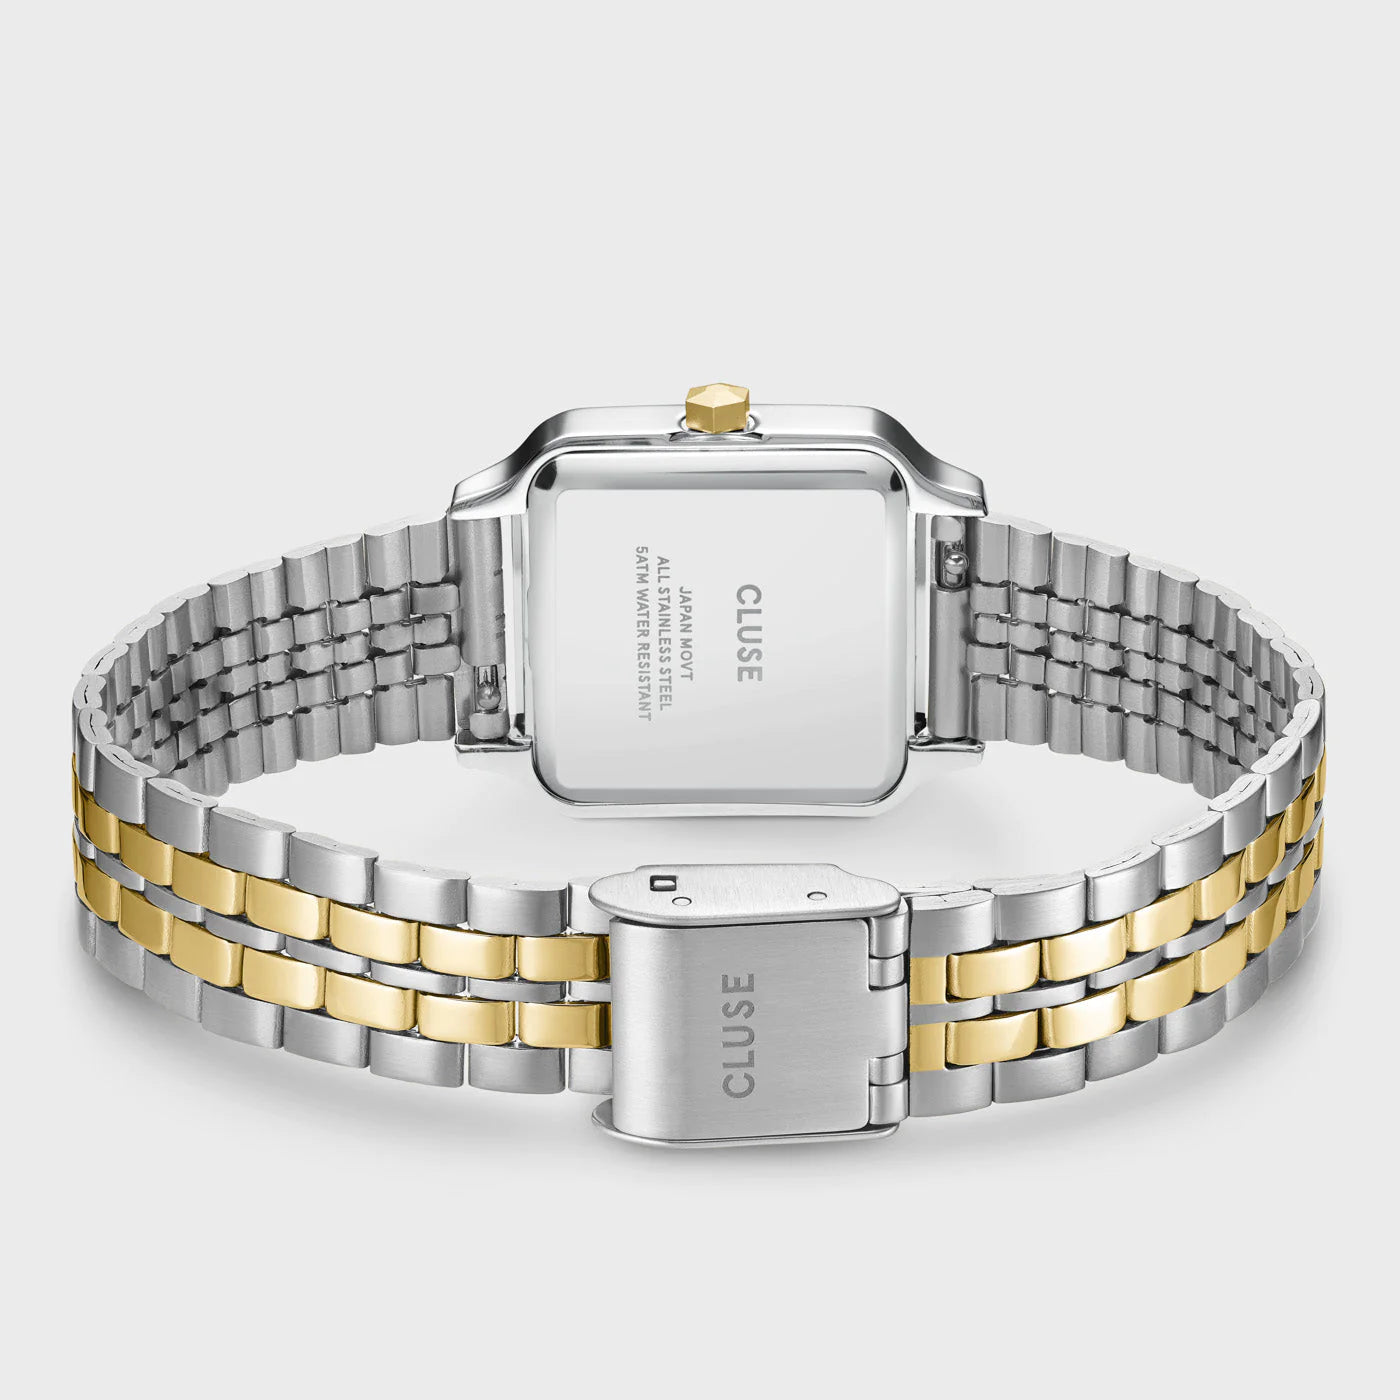 Gehäußeboden und Armband der   Cluse Stahl-Uhr "Gracieuse Petite" in Stahl-Gold-Optik (bicolor) mit weißem Zifferblatt